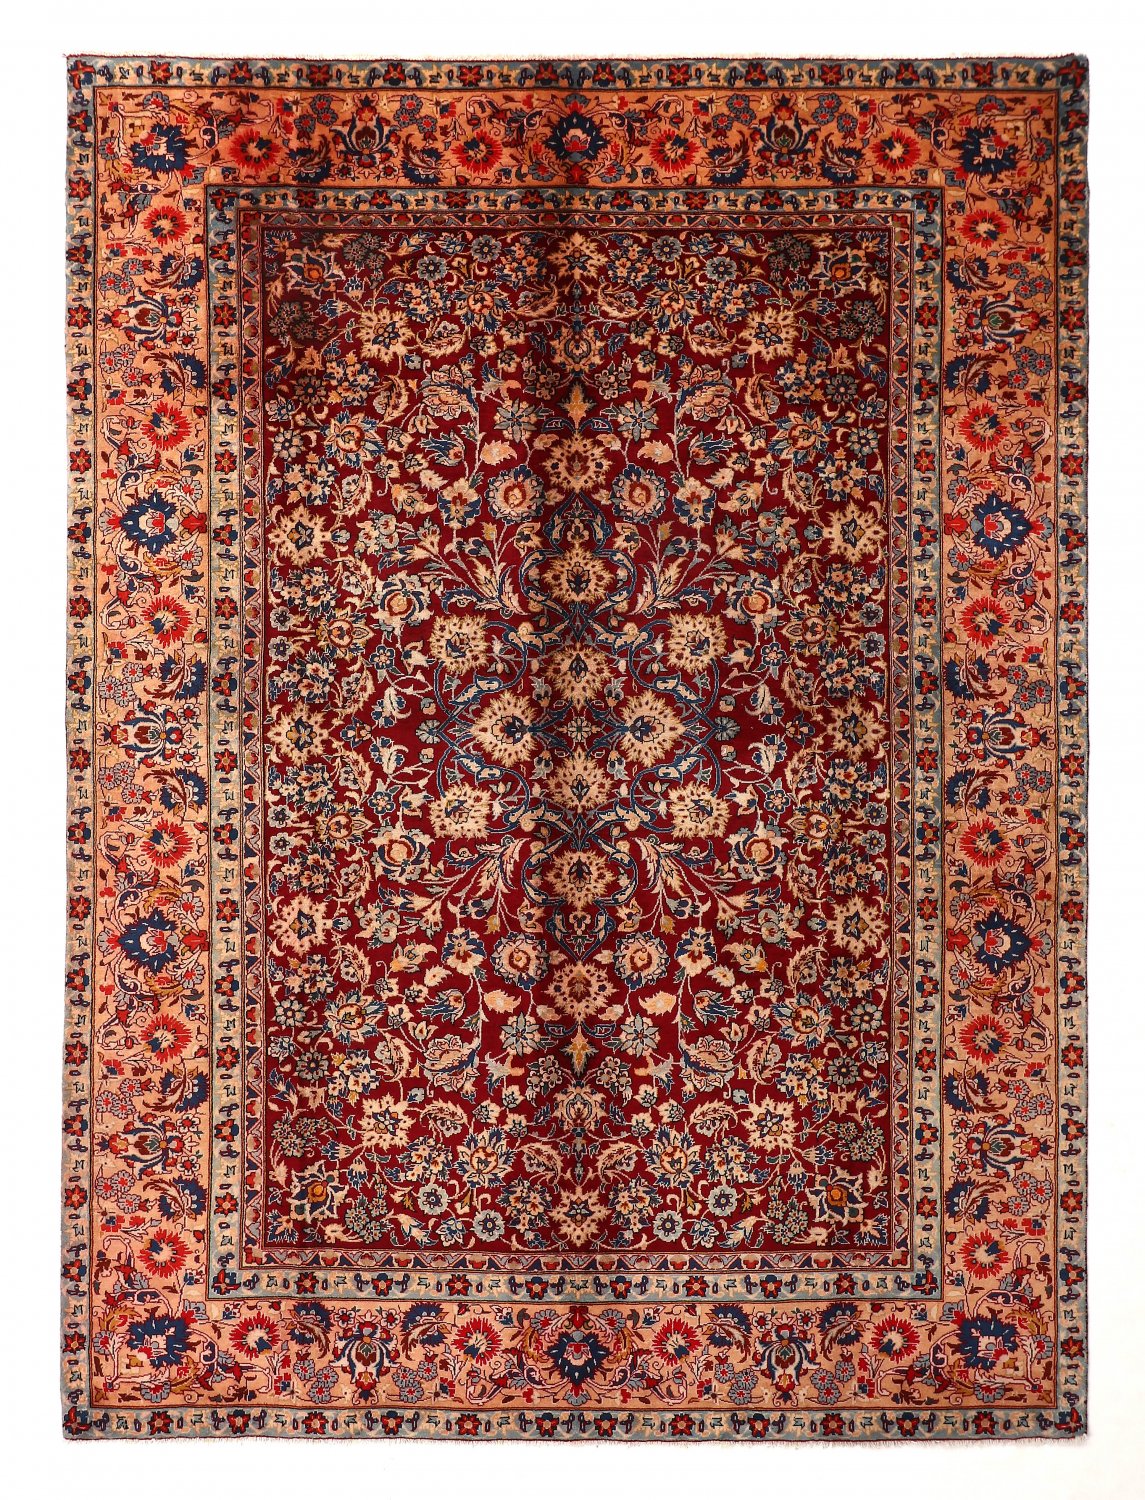 Persian rug Hamedan 329 x 238 cm